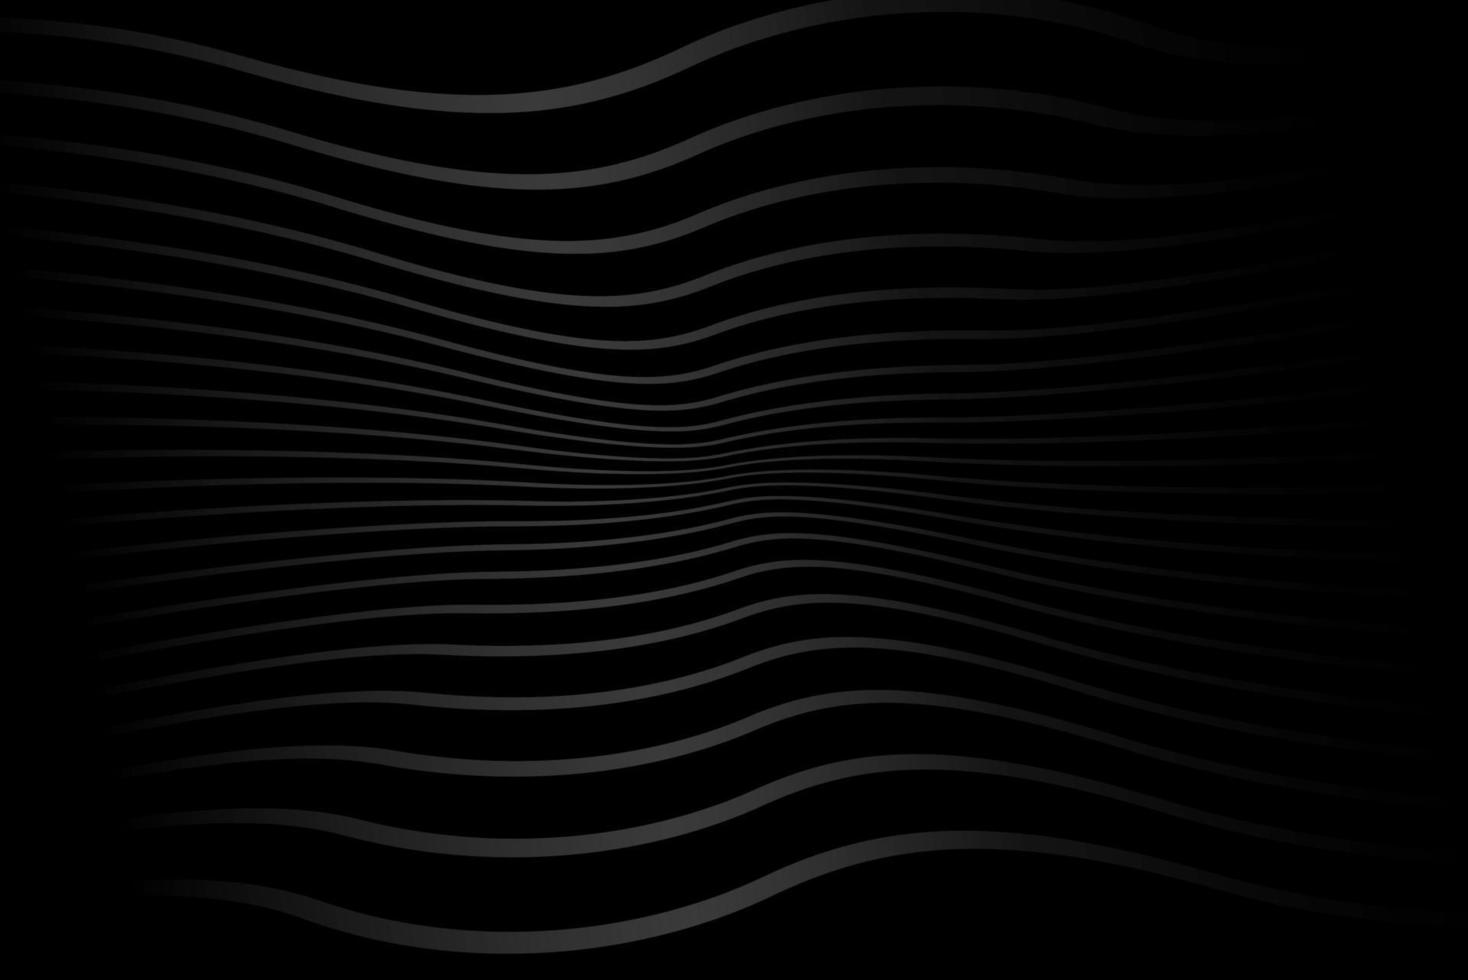 svart abstrakt bakgrund design i svartvit färger. premie rand textur för baner, företag bakgrund. mörk horisontell vektor mall